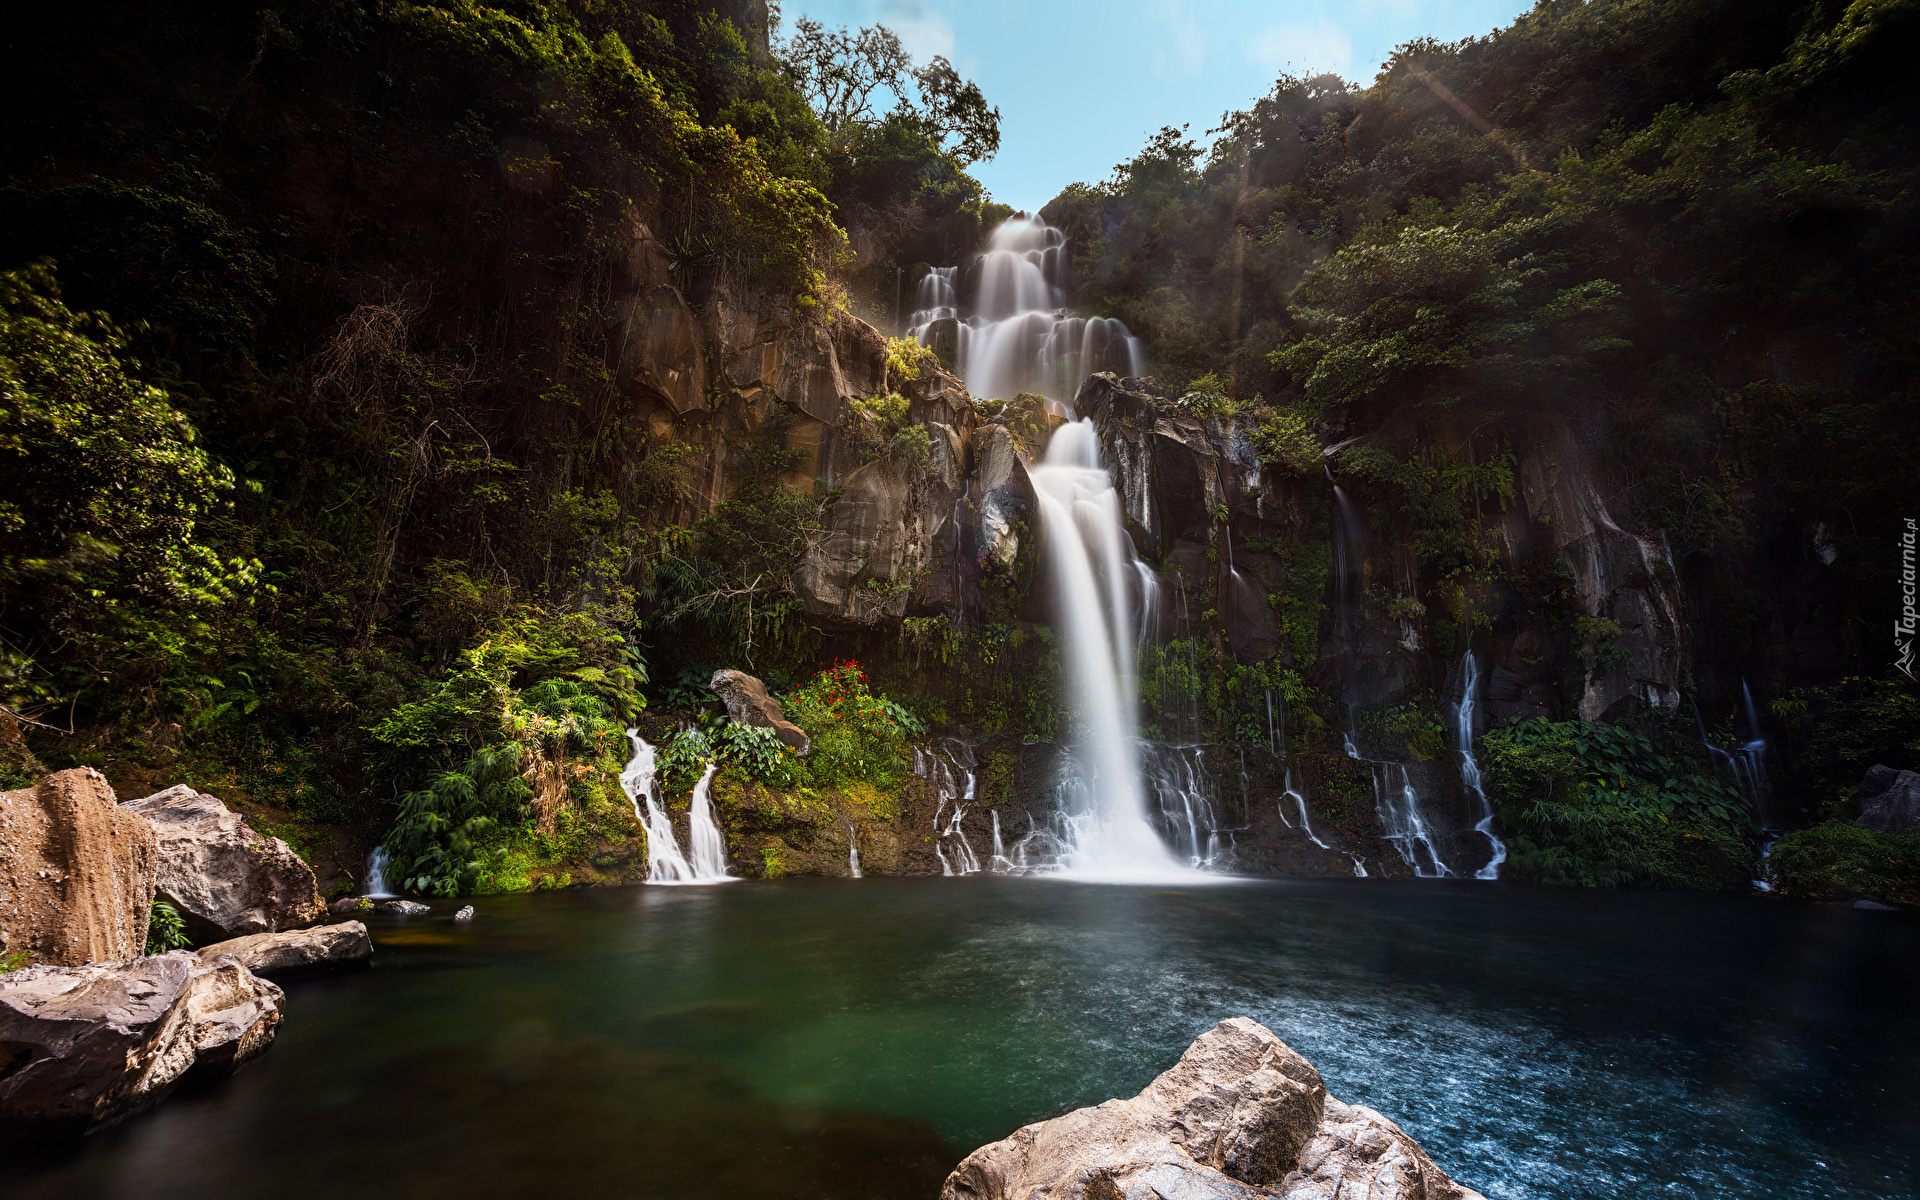 Wodospad, Bassin des Aigrettes, Urwisko, Omszałe, Skały, Kamienie, Wyspa Reunion, Francja